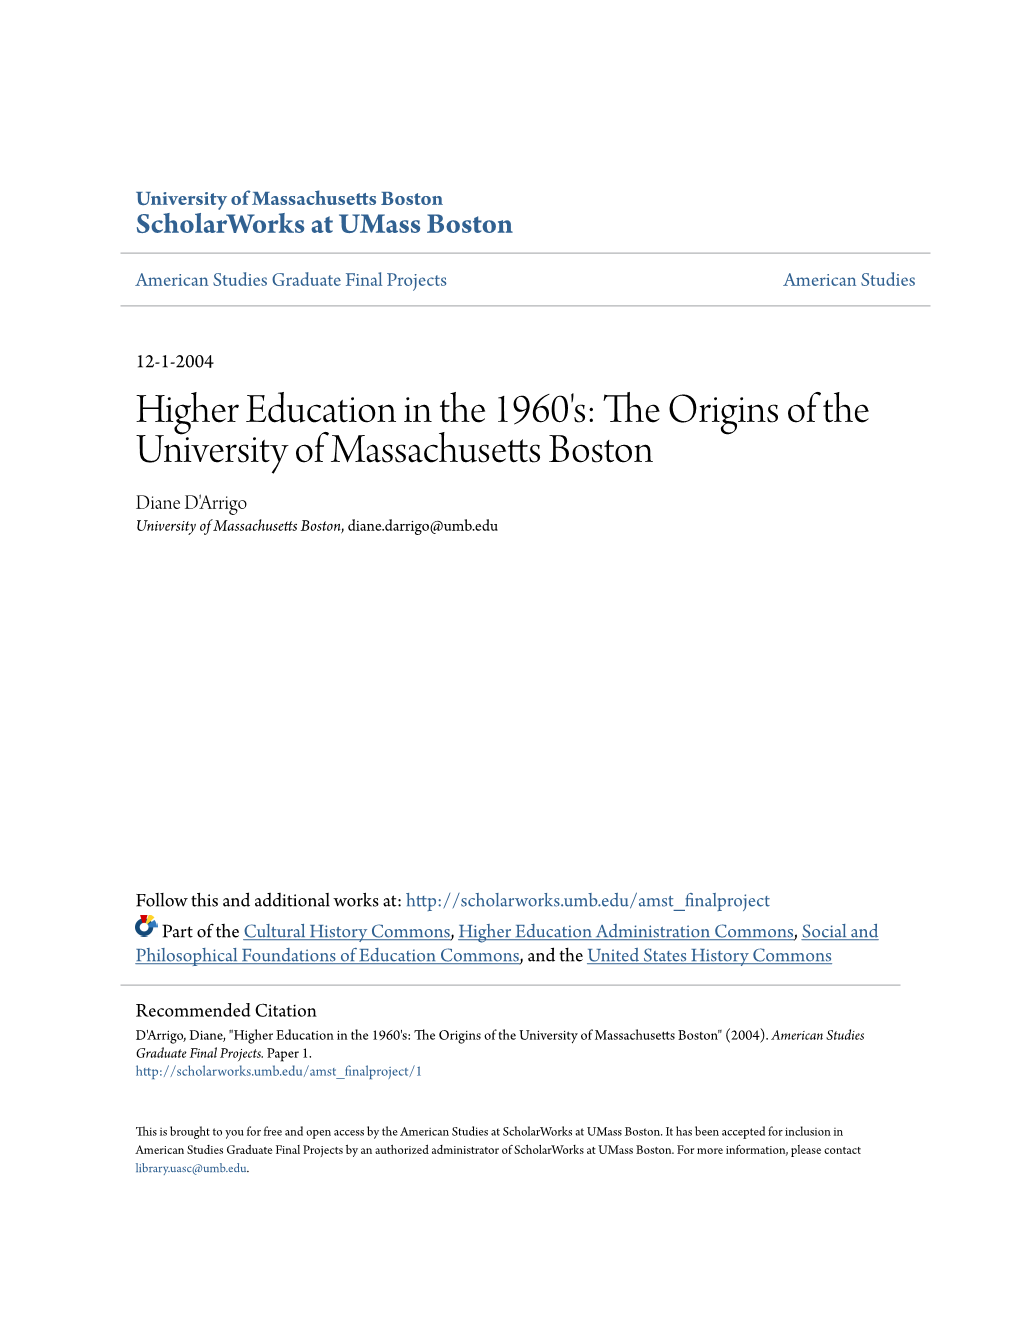 Higher Education in the 1960'S: the Origins of the University of Massachusetts Boston Diane D'arrigo University of Massachusetts Boston, Diane.Darrigo@Umb.Edu